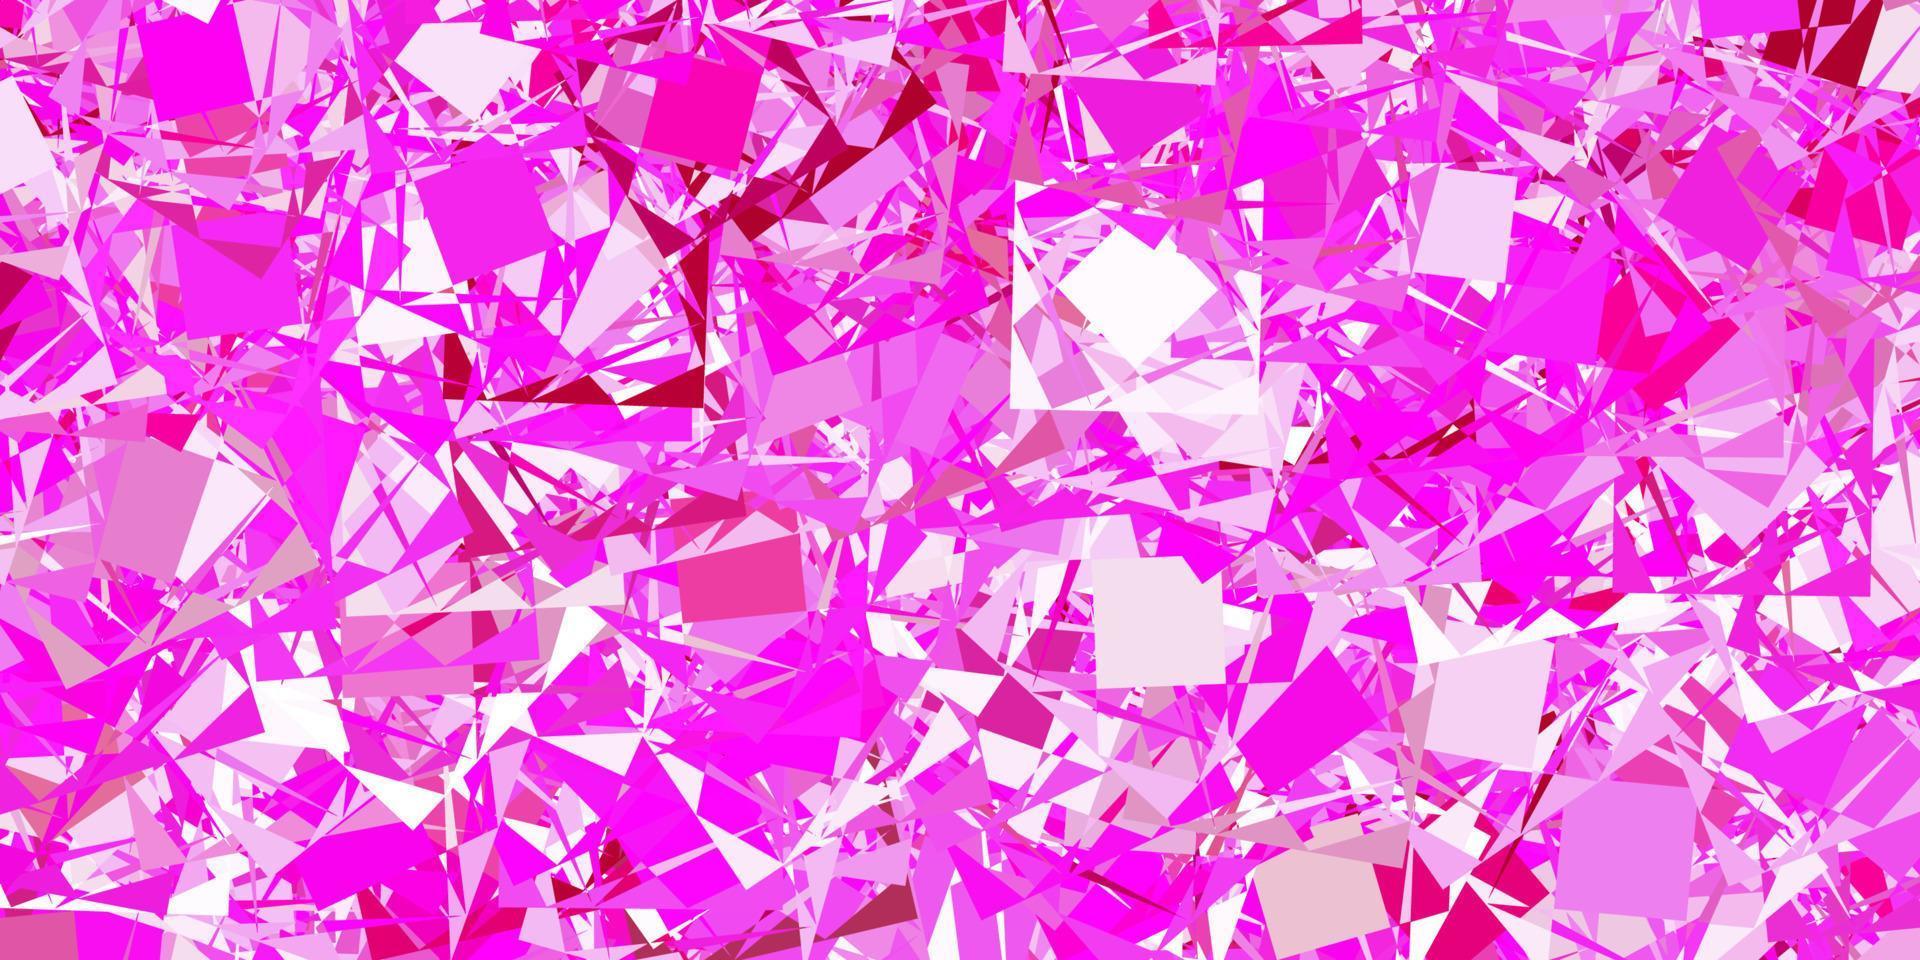 modello vettoriale rosa chiaro con forme poligonali.